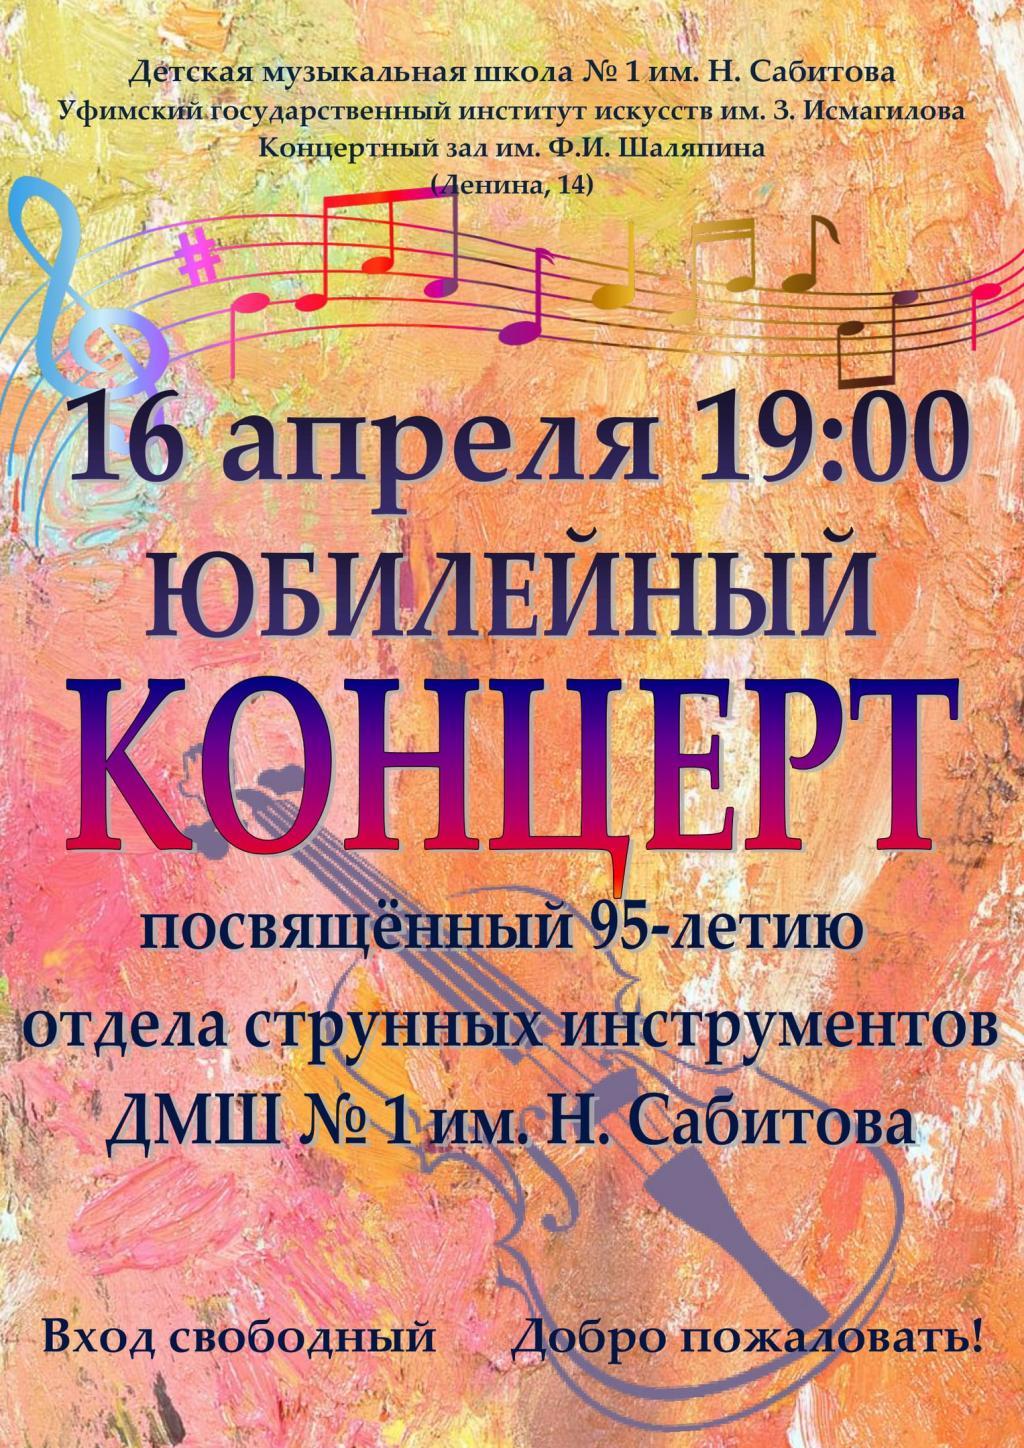 Юбилейный концерт отдела струнных инструментов ДМШ №1 им. Н. Сабитова .